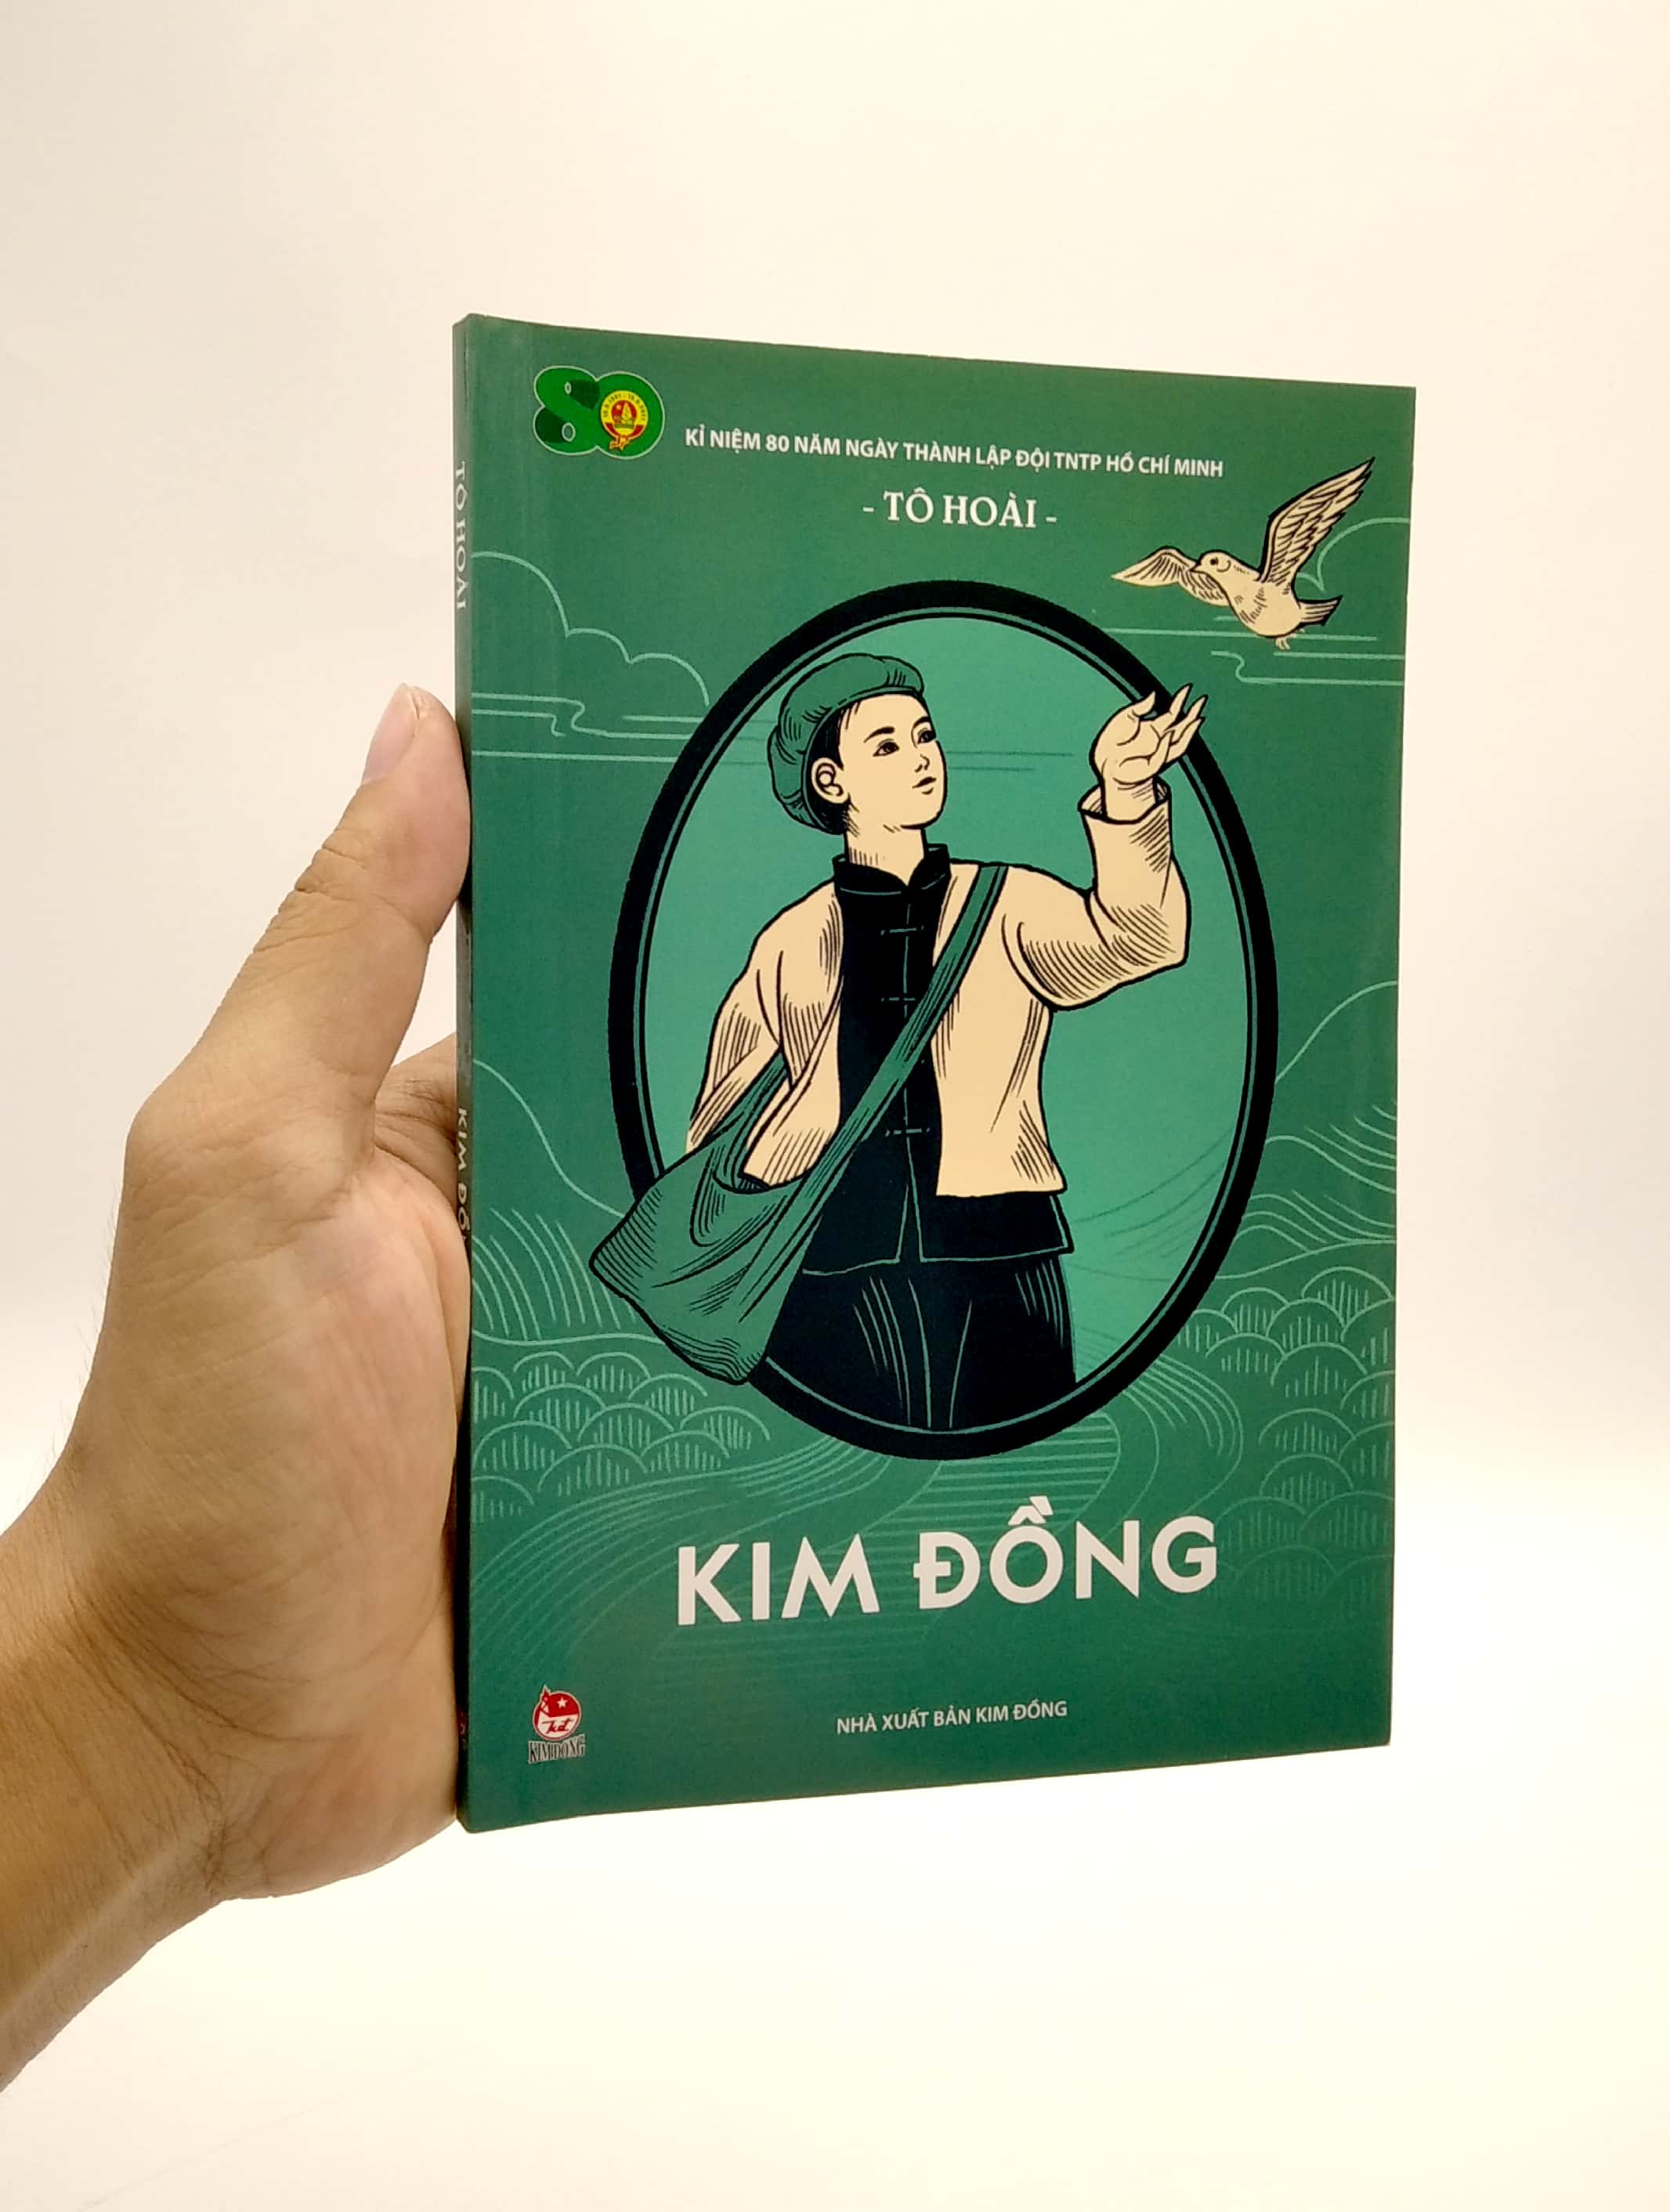 Kim Đồng (Tái Bản 2021)